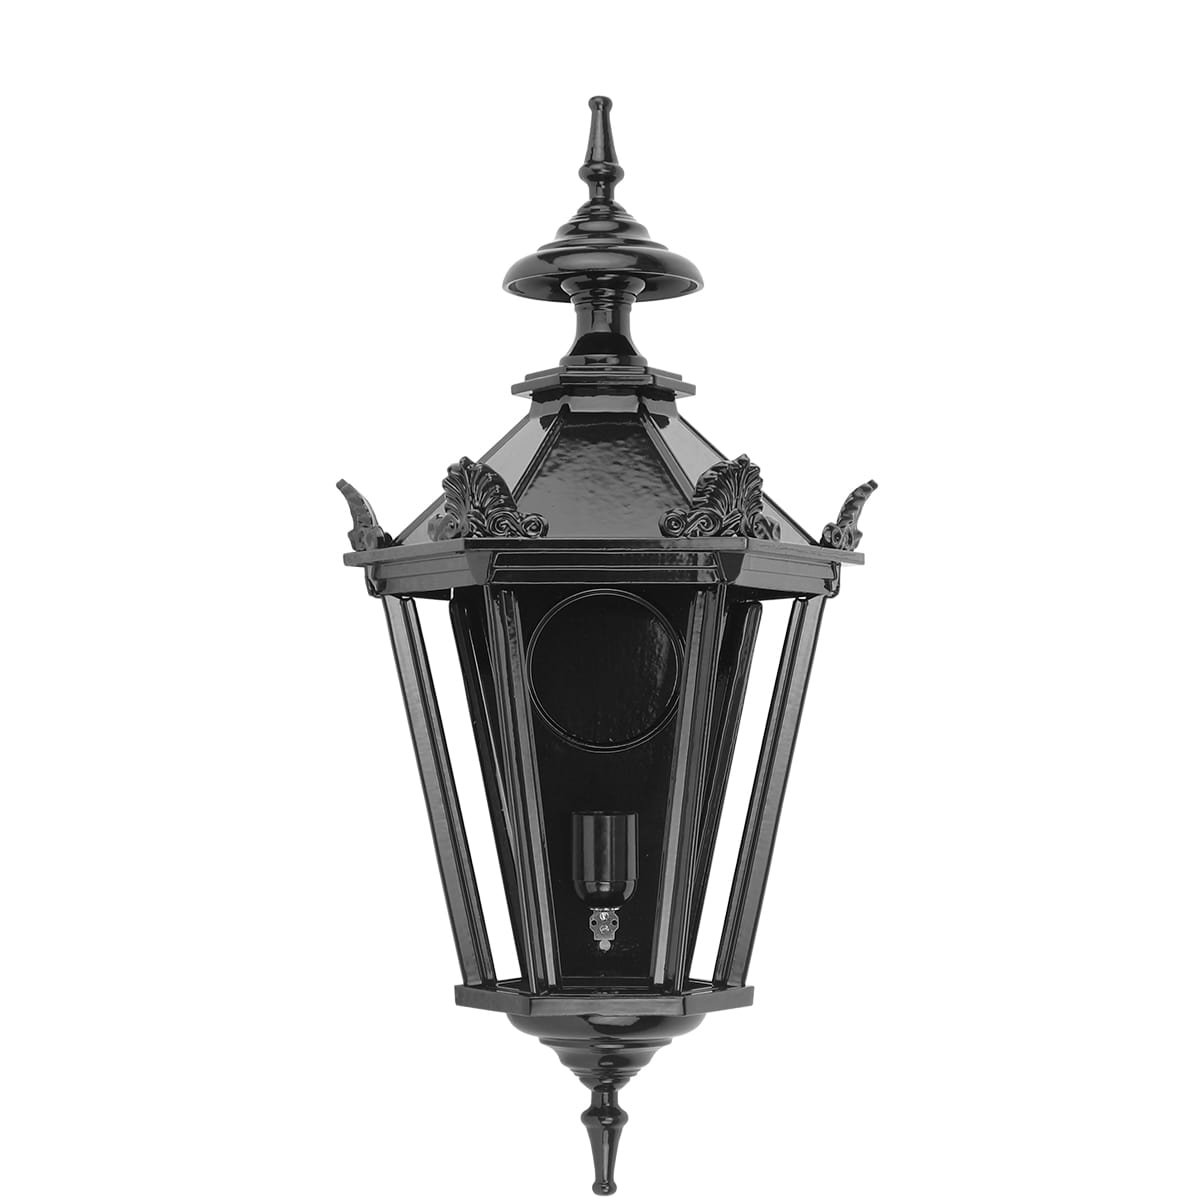 Buitenverlichting Klassiek Landelijk Muurlamp Zwolle met kronen M - 52 cm